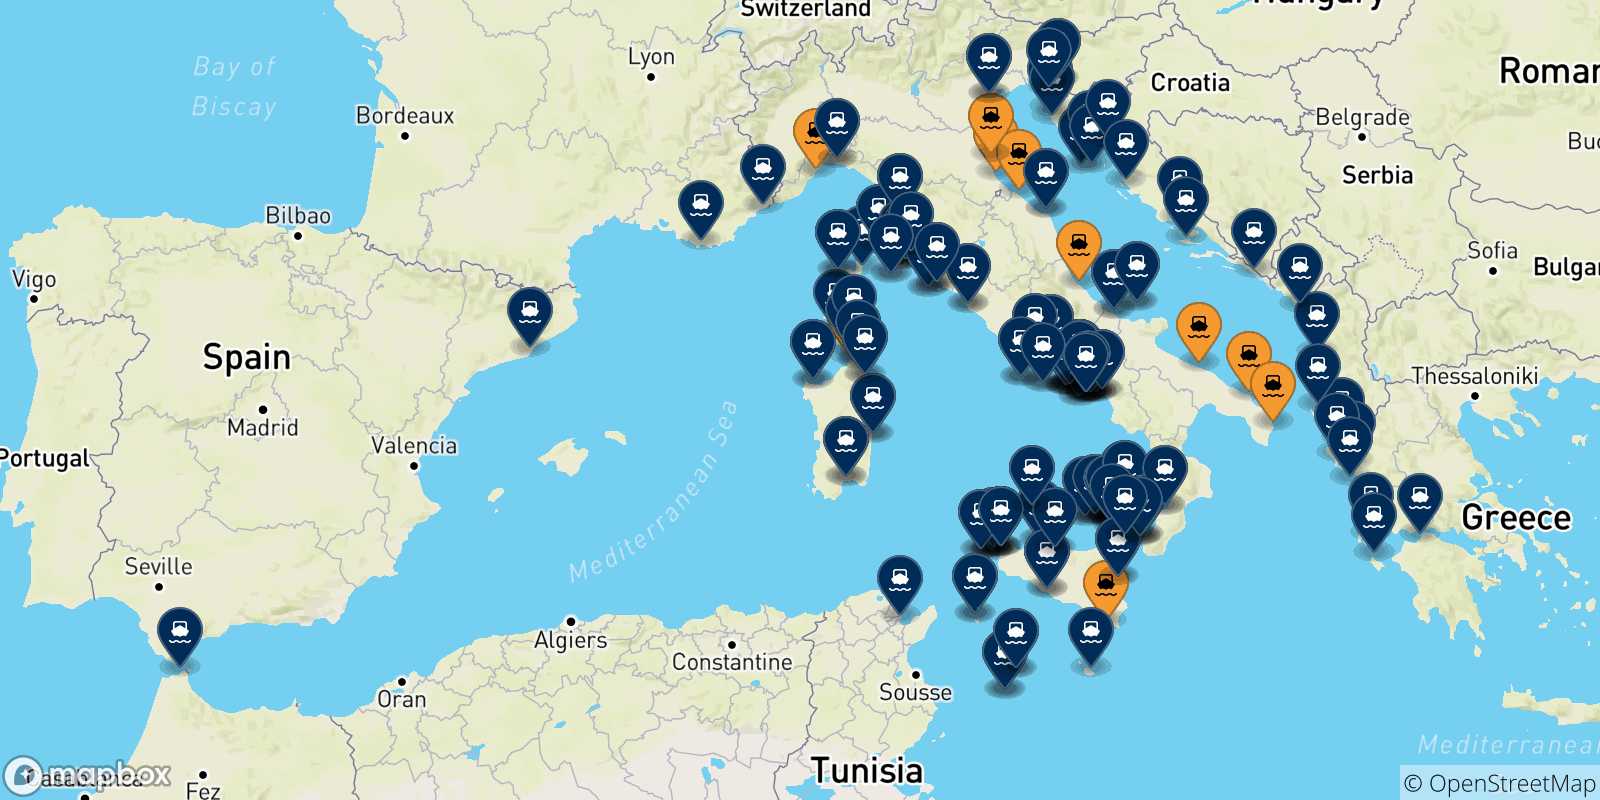 Mappa delle destinazioni raggiungibili dall' Italia